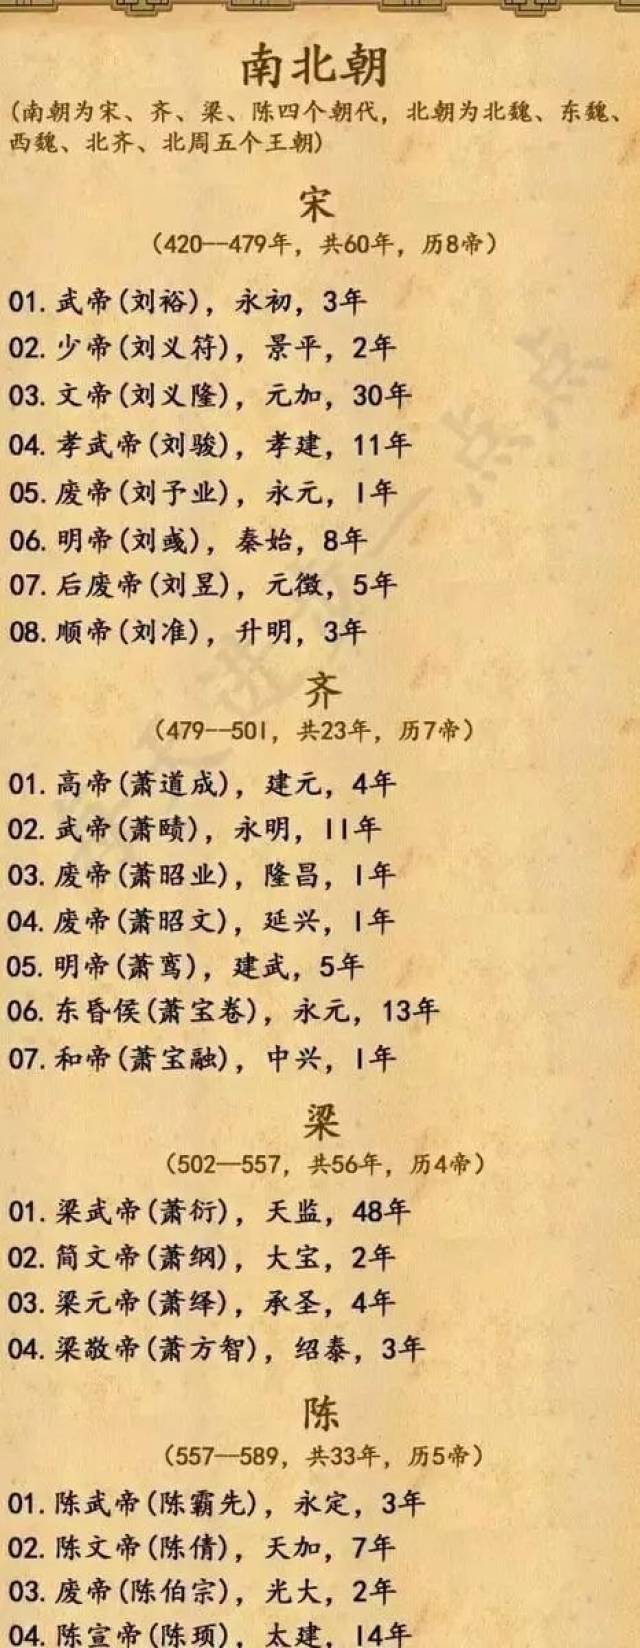 中国上下五千年:30幅图道尽历史王朝的变更!